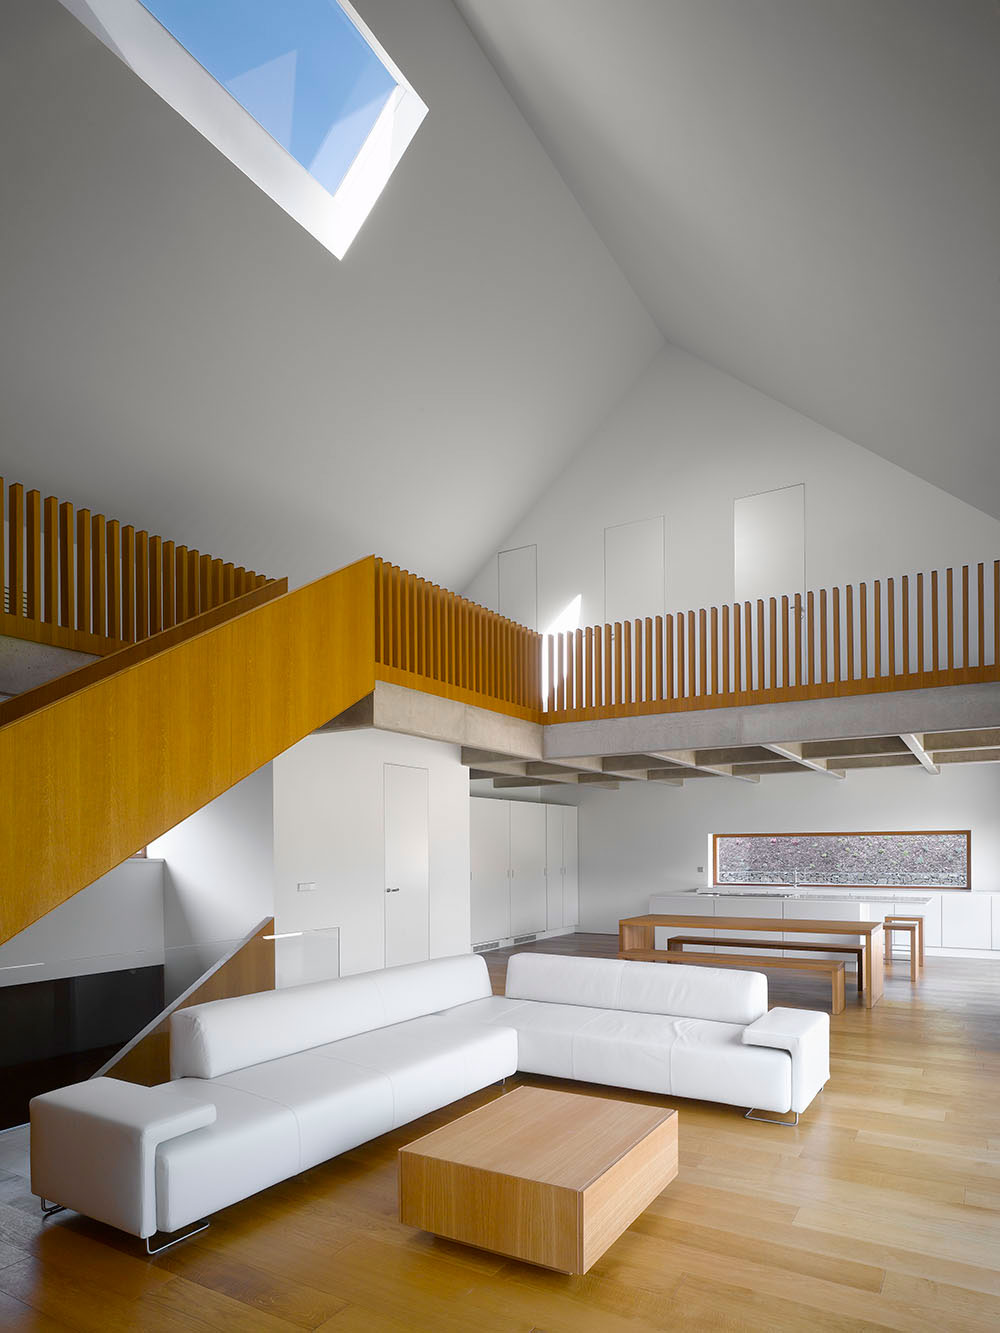 Obytné patro tvoří obývací prostor spojený s kuchyní a jídelnou